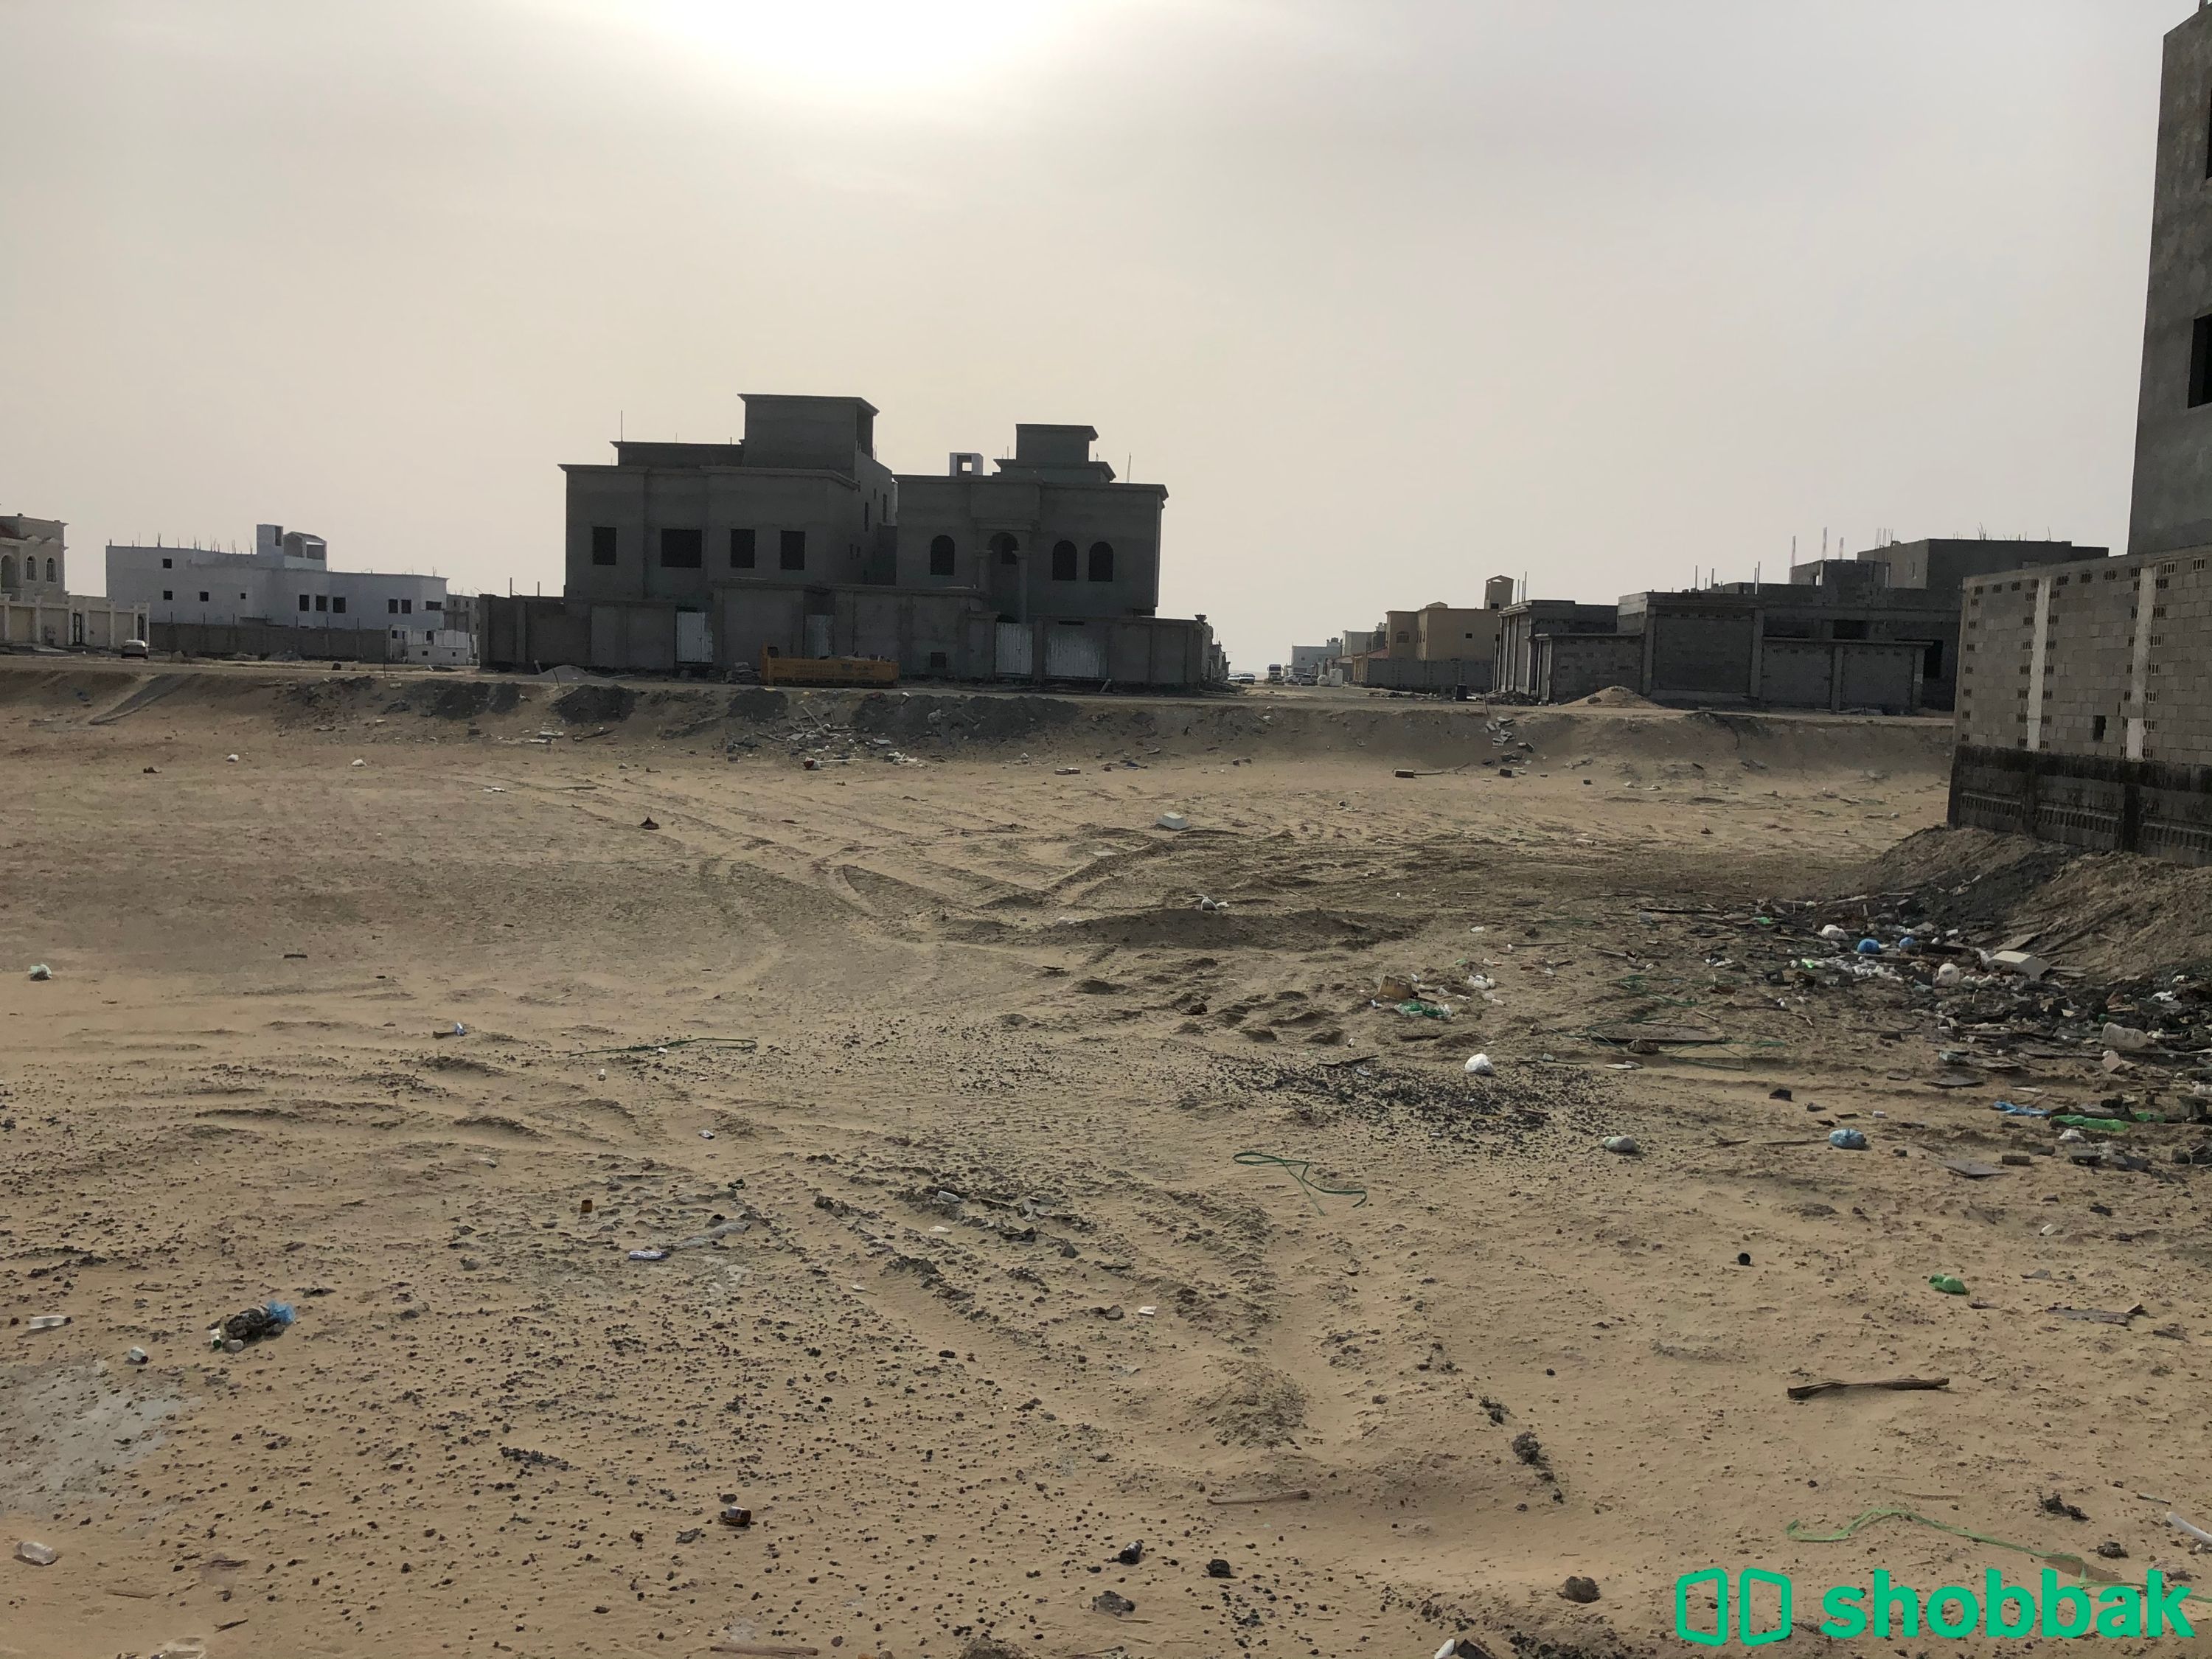 أرض للبيع في حي الكوثر الخبر  شباك السعودية